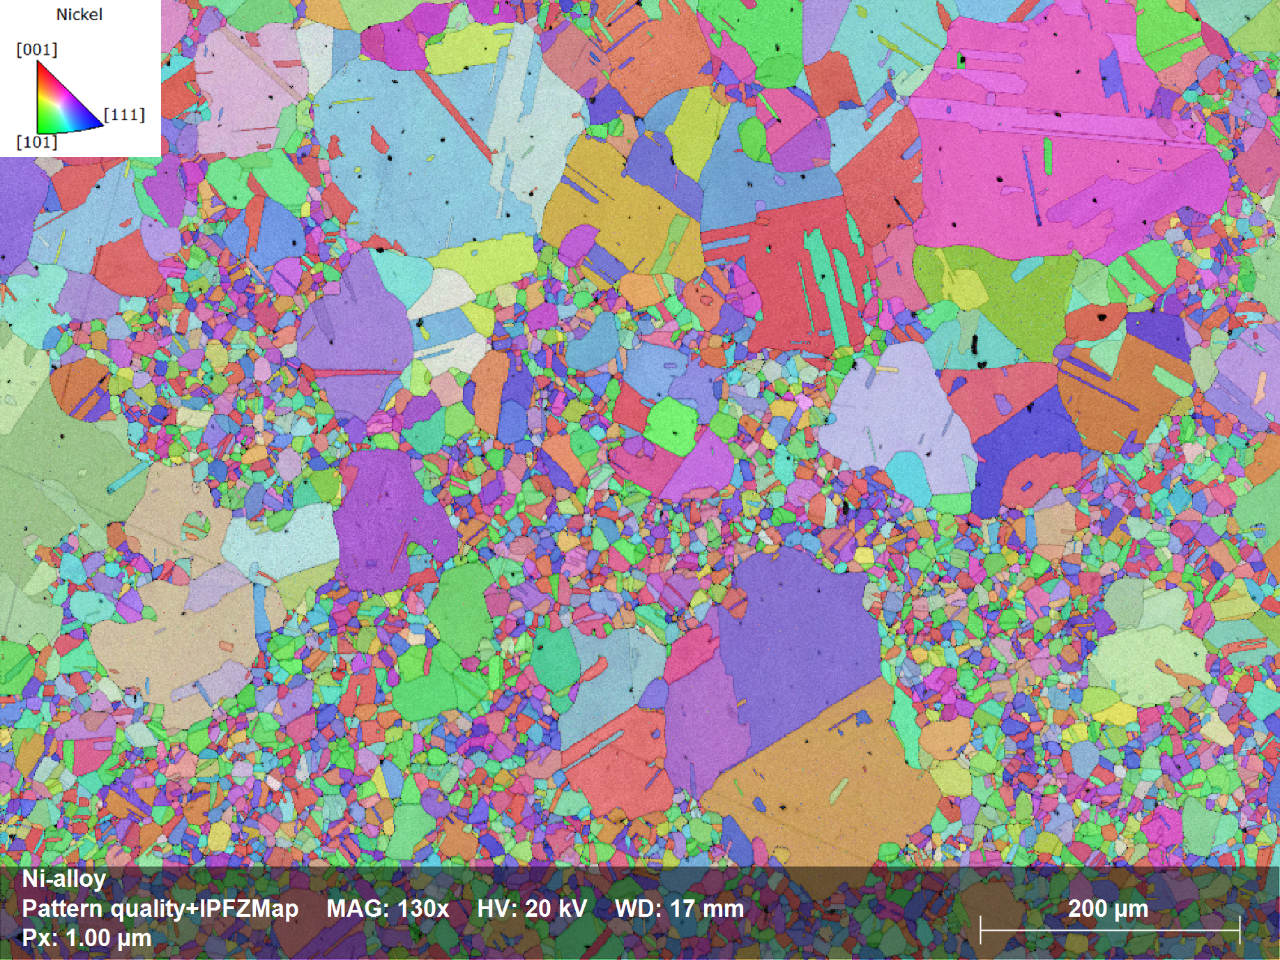 Kristallorientungs-Map (IPF Z) der Ni-Legierung, das死Ausrichtung jed korn Bezug auf死Probensenkrechte zeigt (siehe Farbkodierung在der诈骗obere Ecke)。Messgeschwindigkeit: 501帧/秒,Nulllosungen: 1, 3%。Ohne Datenbereinigung !